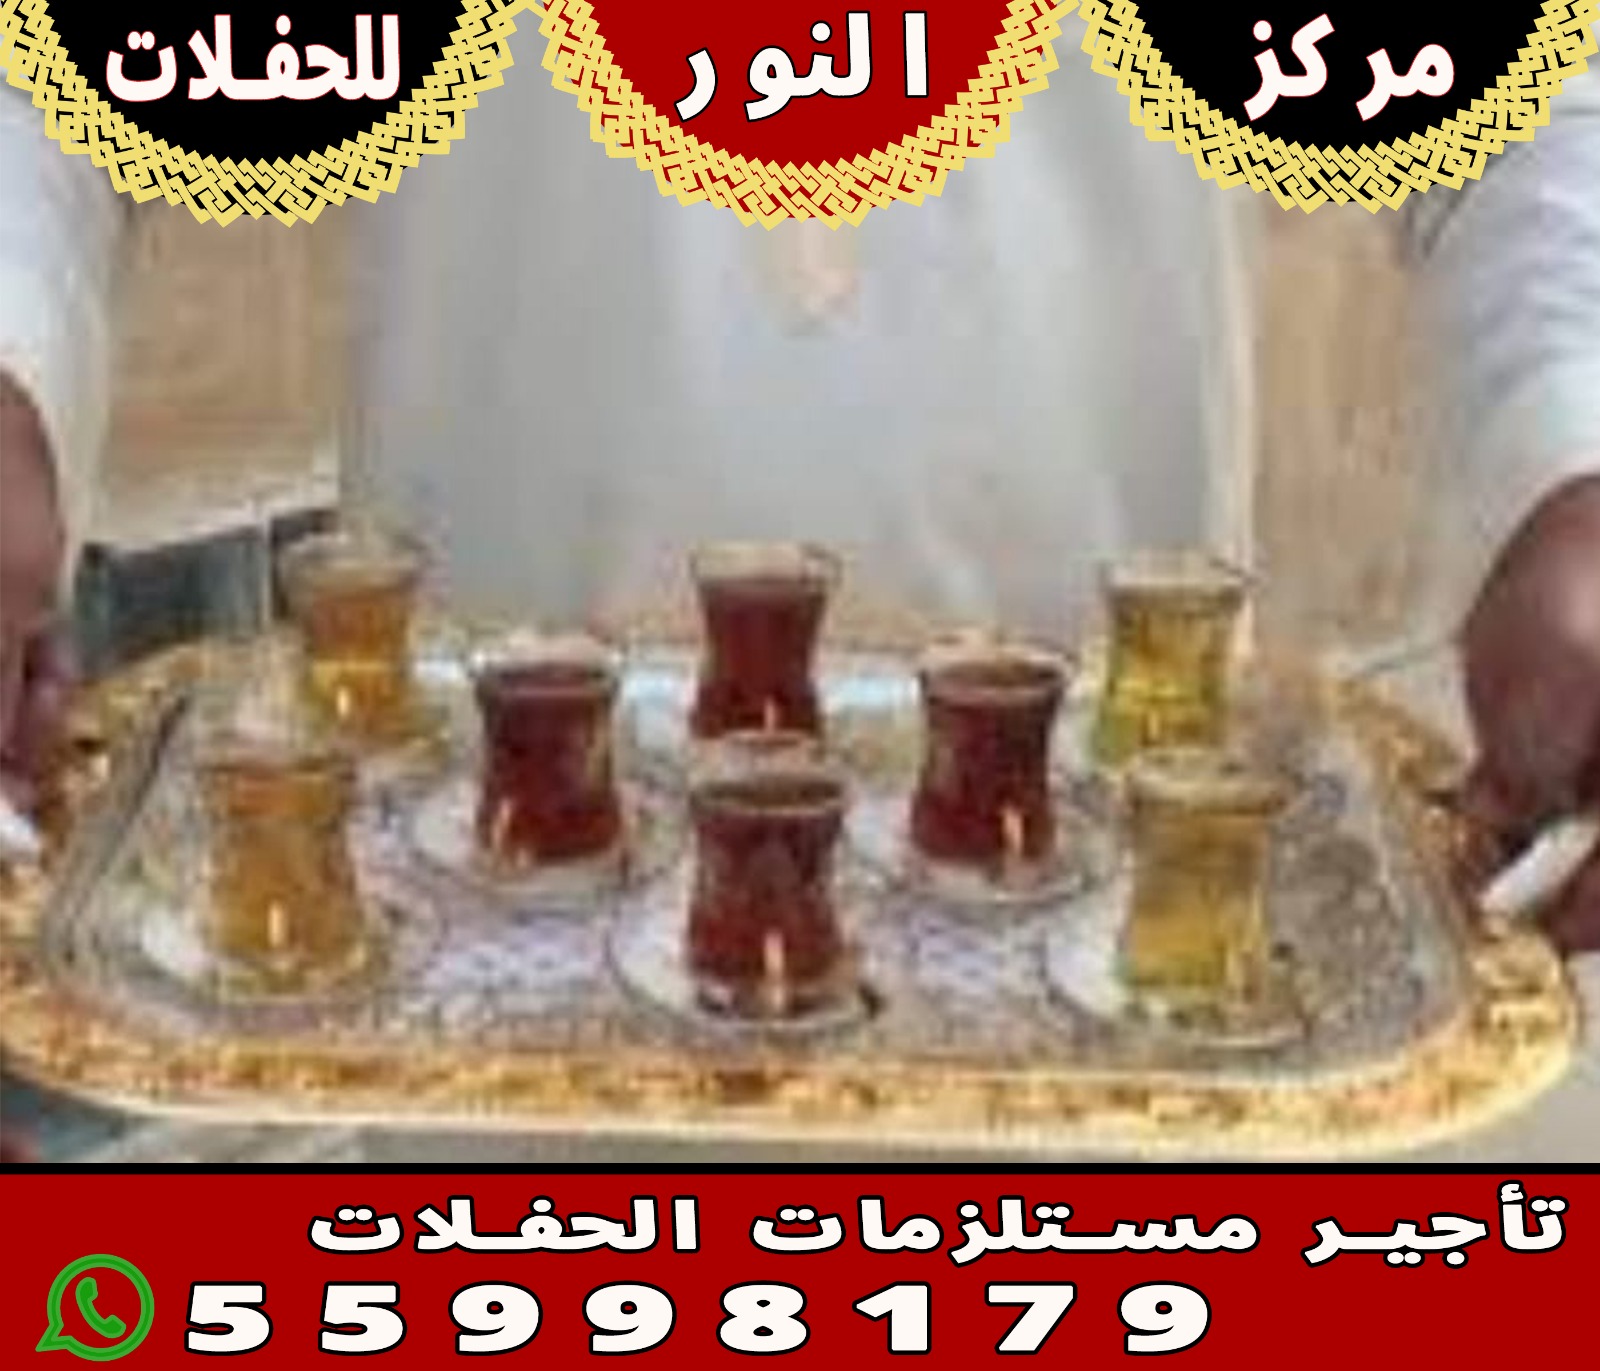 خدمة شاي وقهوه في الكويت